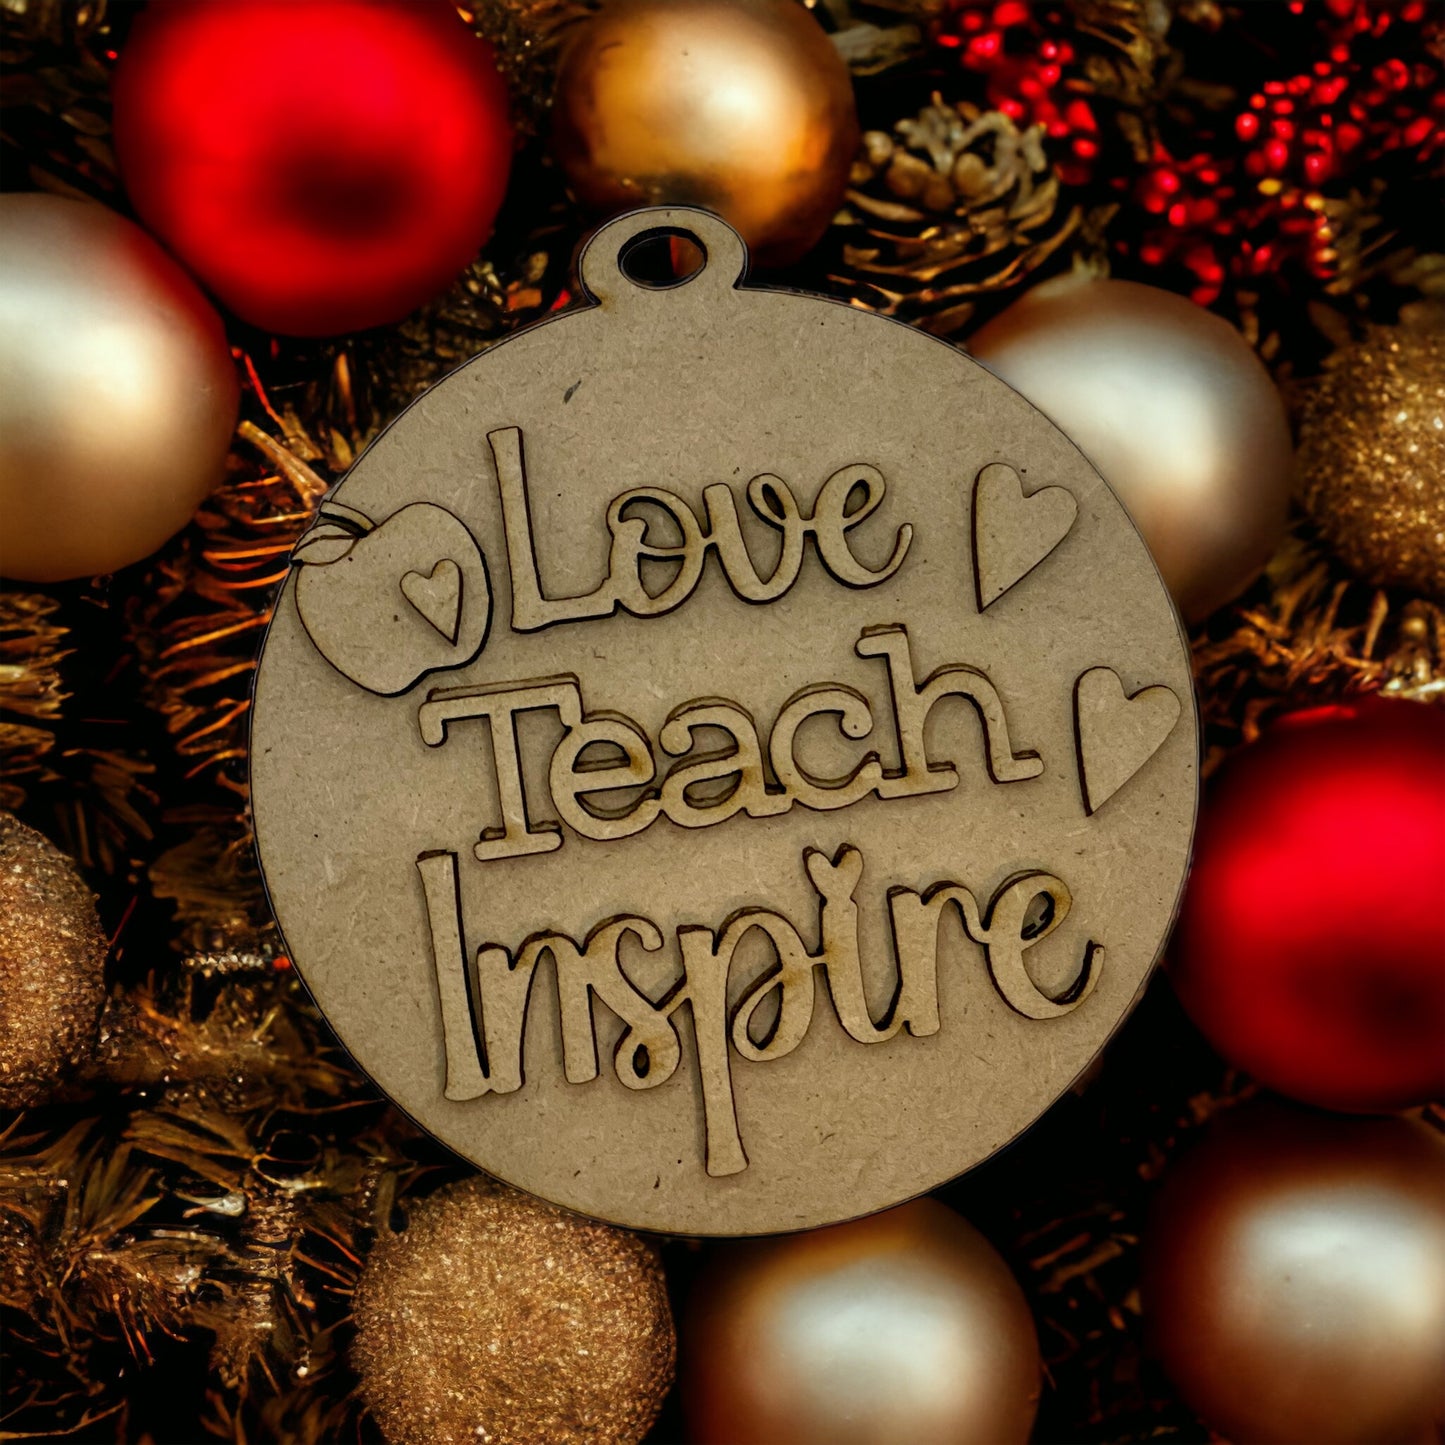 DIY Kit -Love, Teach, Inspire Teacher Ornament